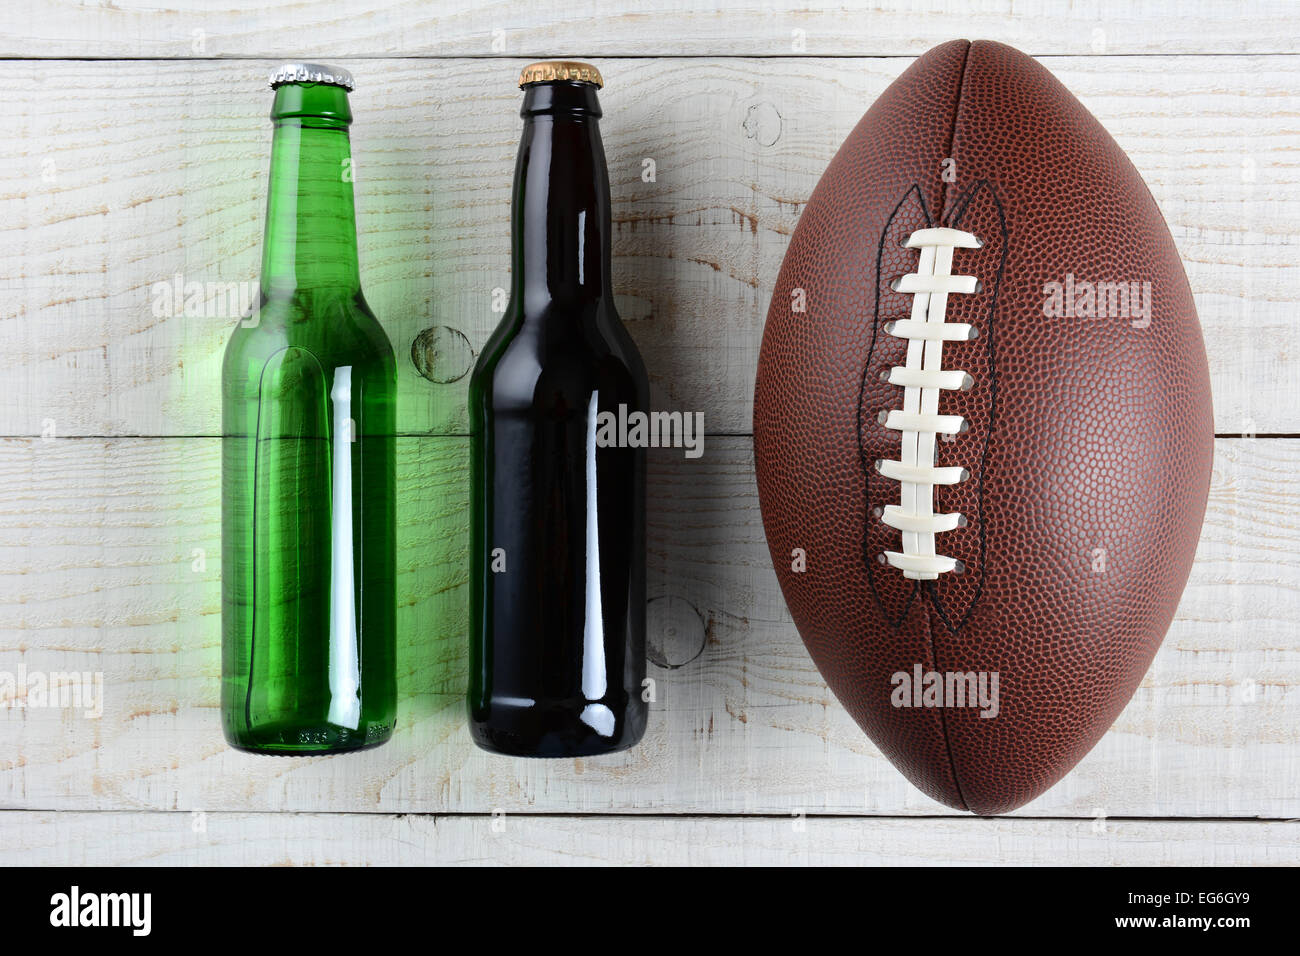 Zwei Bierflaschen und ein amerikanisches Fußball auf einem rustikalen weiß getünchten Holzoberfläche. Querformat. Eine grüne Flasche und Stockfoto